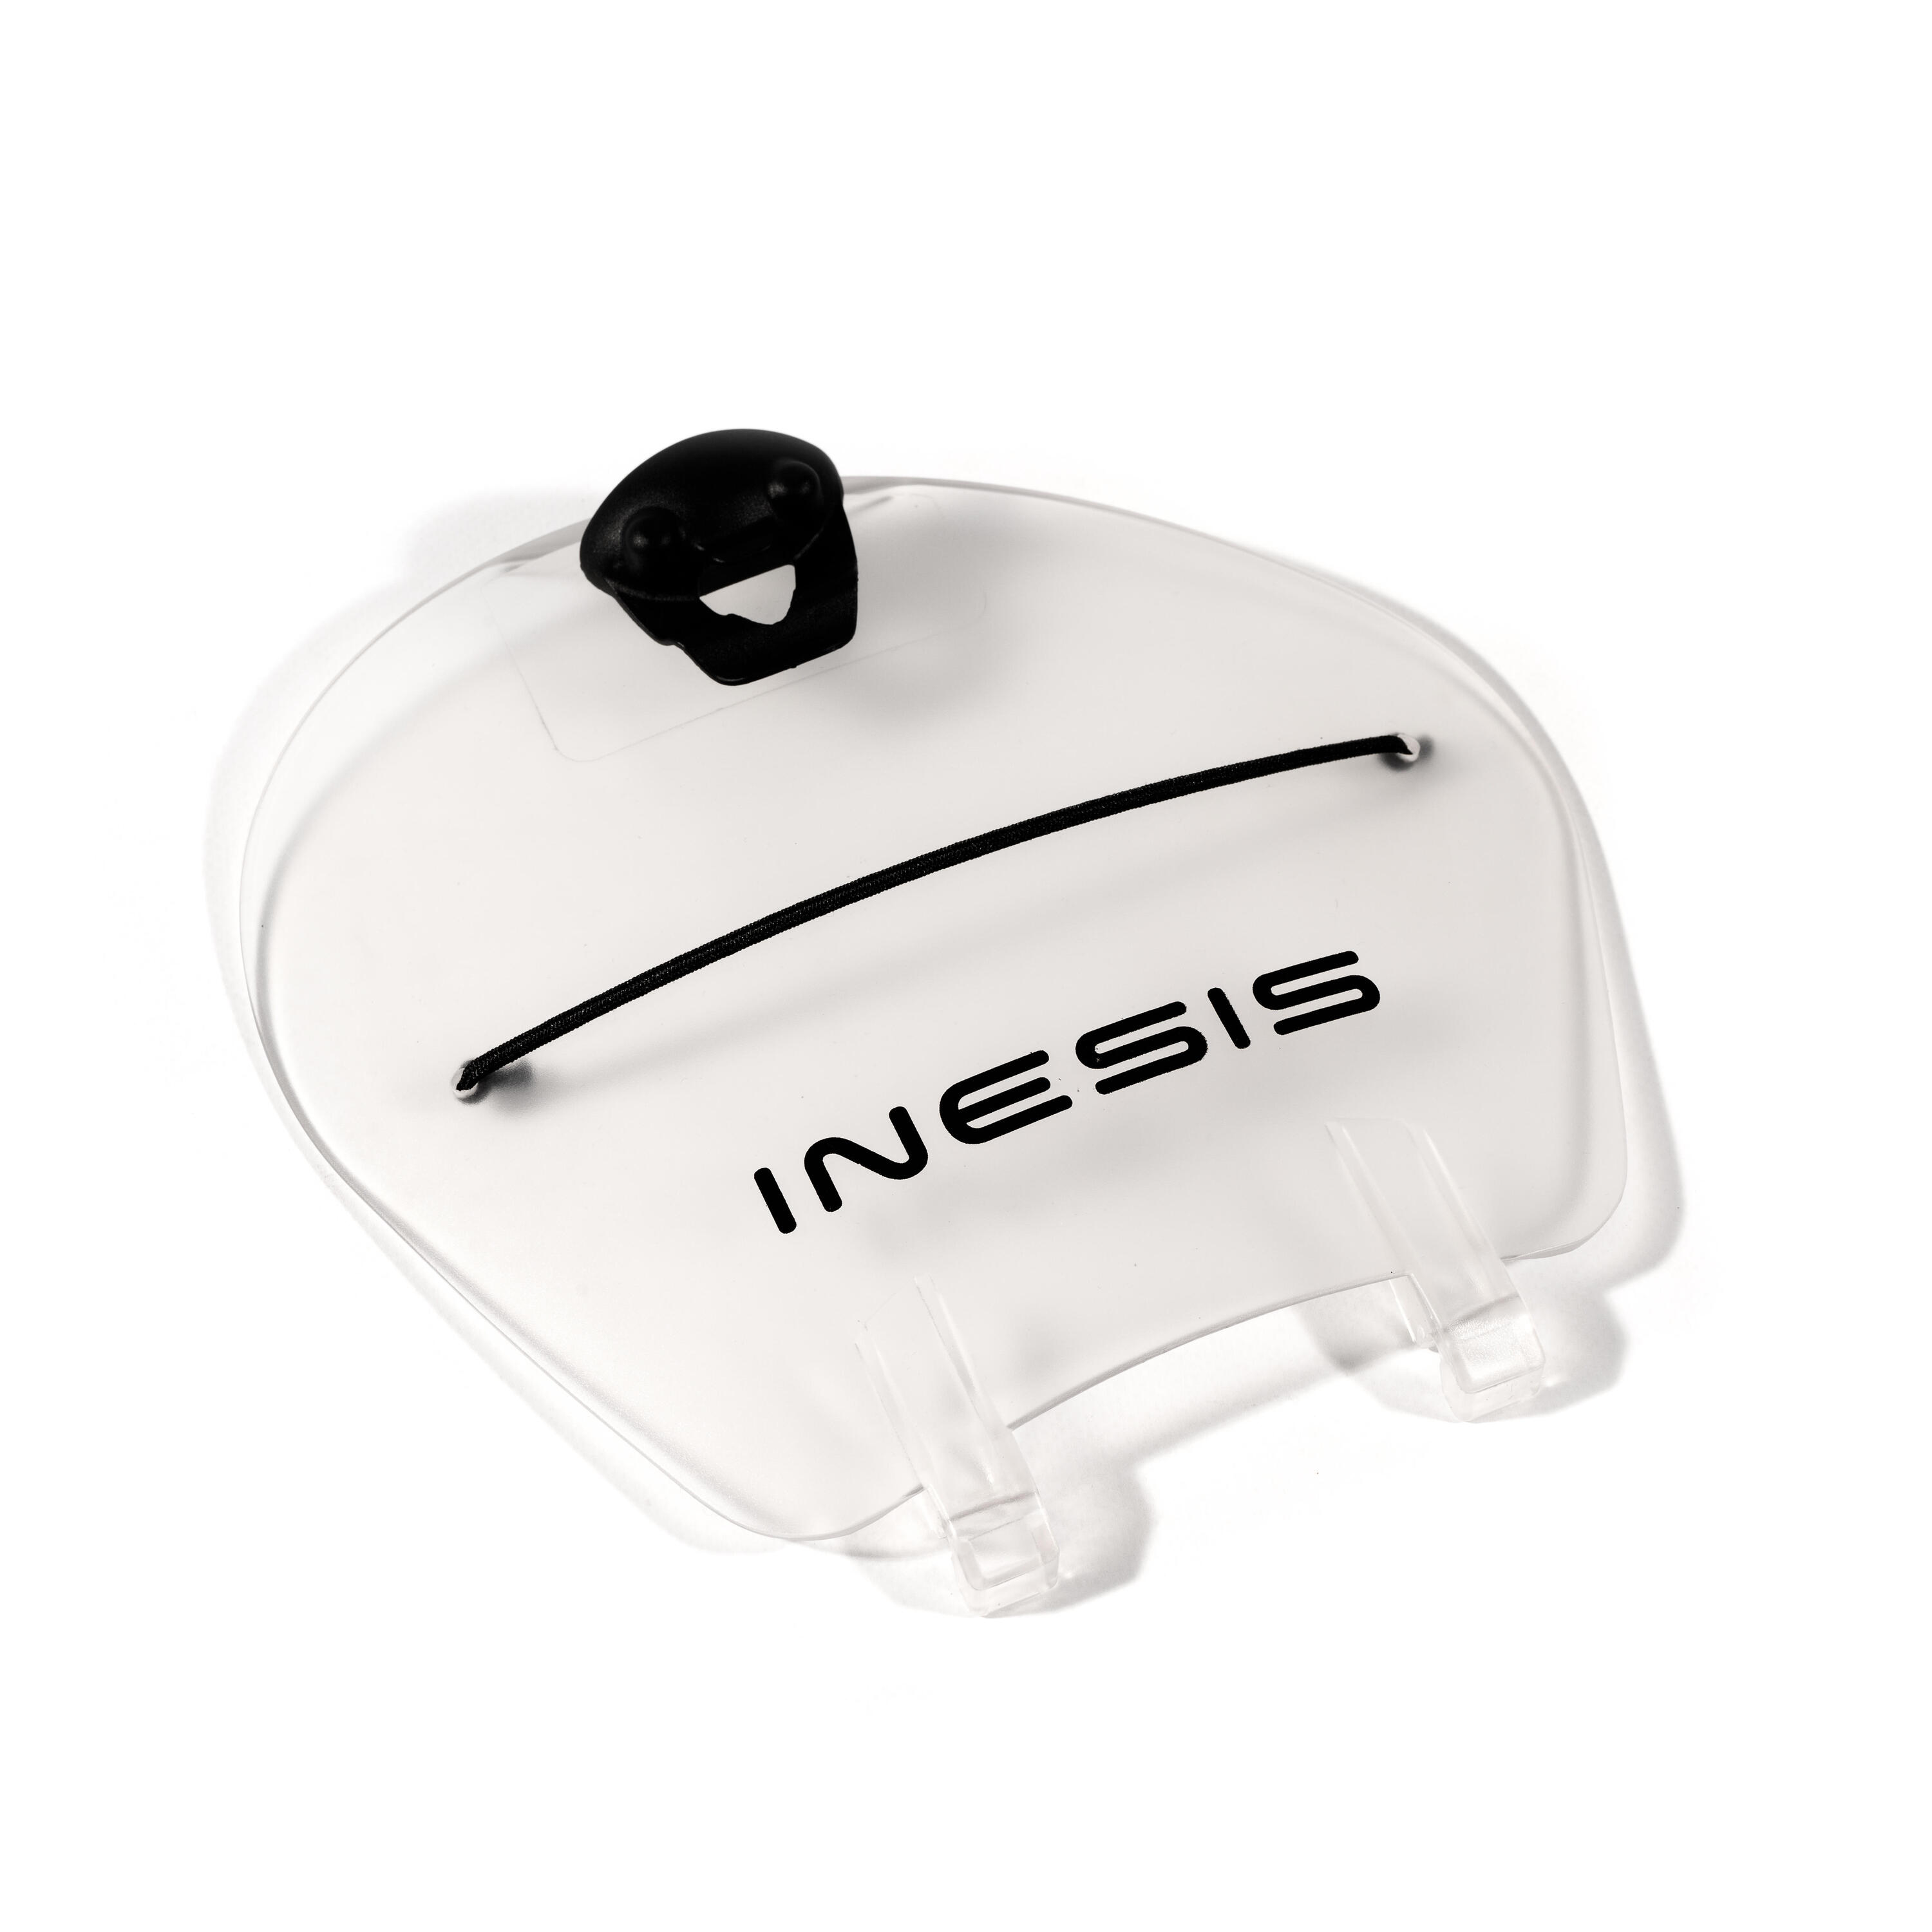 Крышка консоли тележки для гольфа для трехколесной тележки INESIS